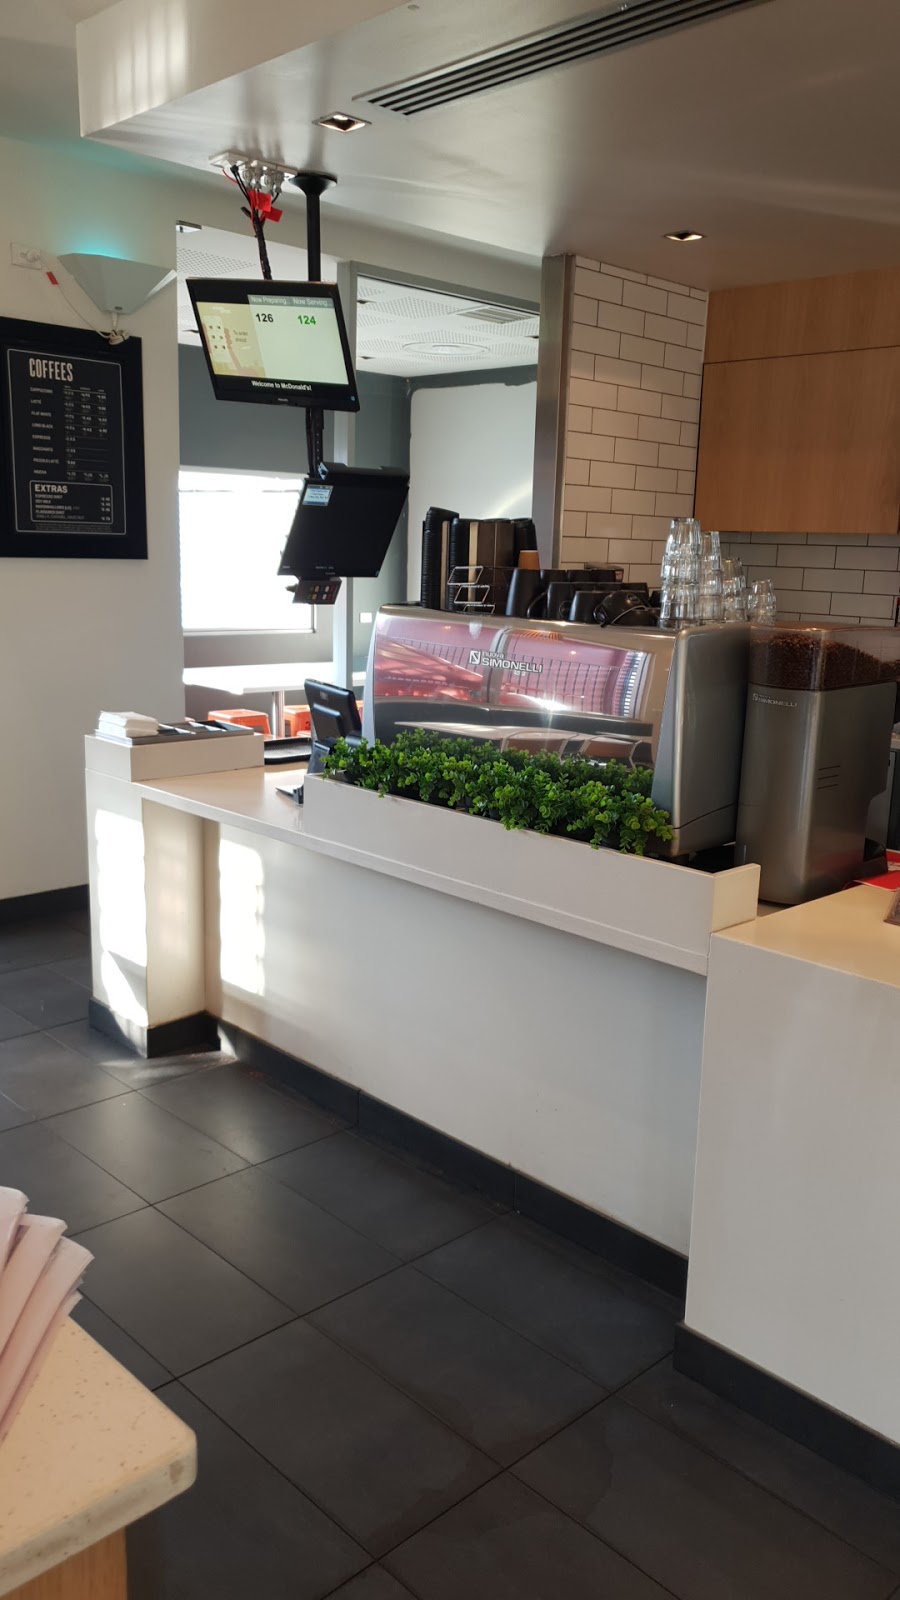 McDonalds Tumut | cafe | 25 Fitzroy St, Tumut NSW 2720, Australia | 0269471058 OR +61 2 6947 1058